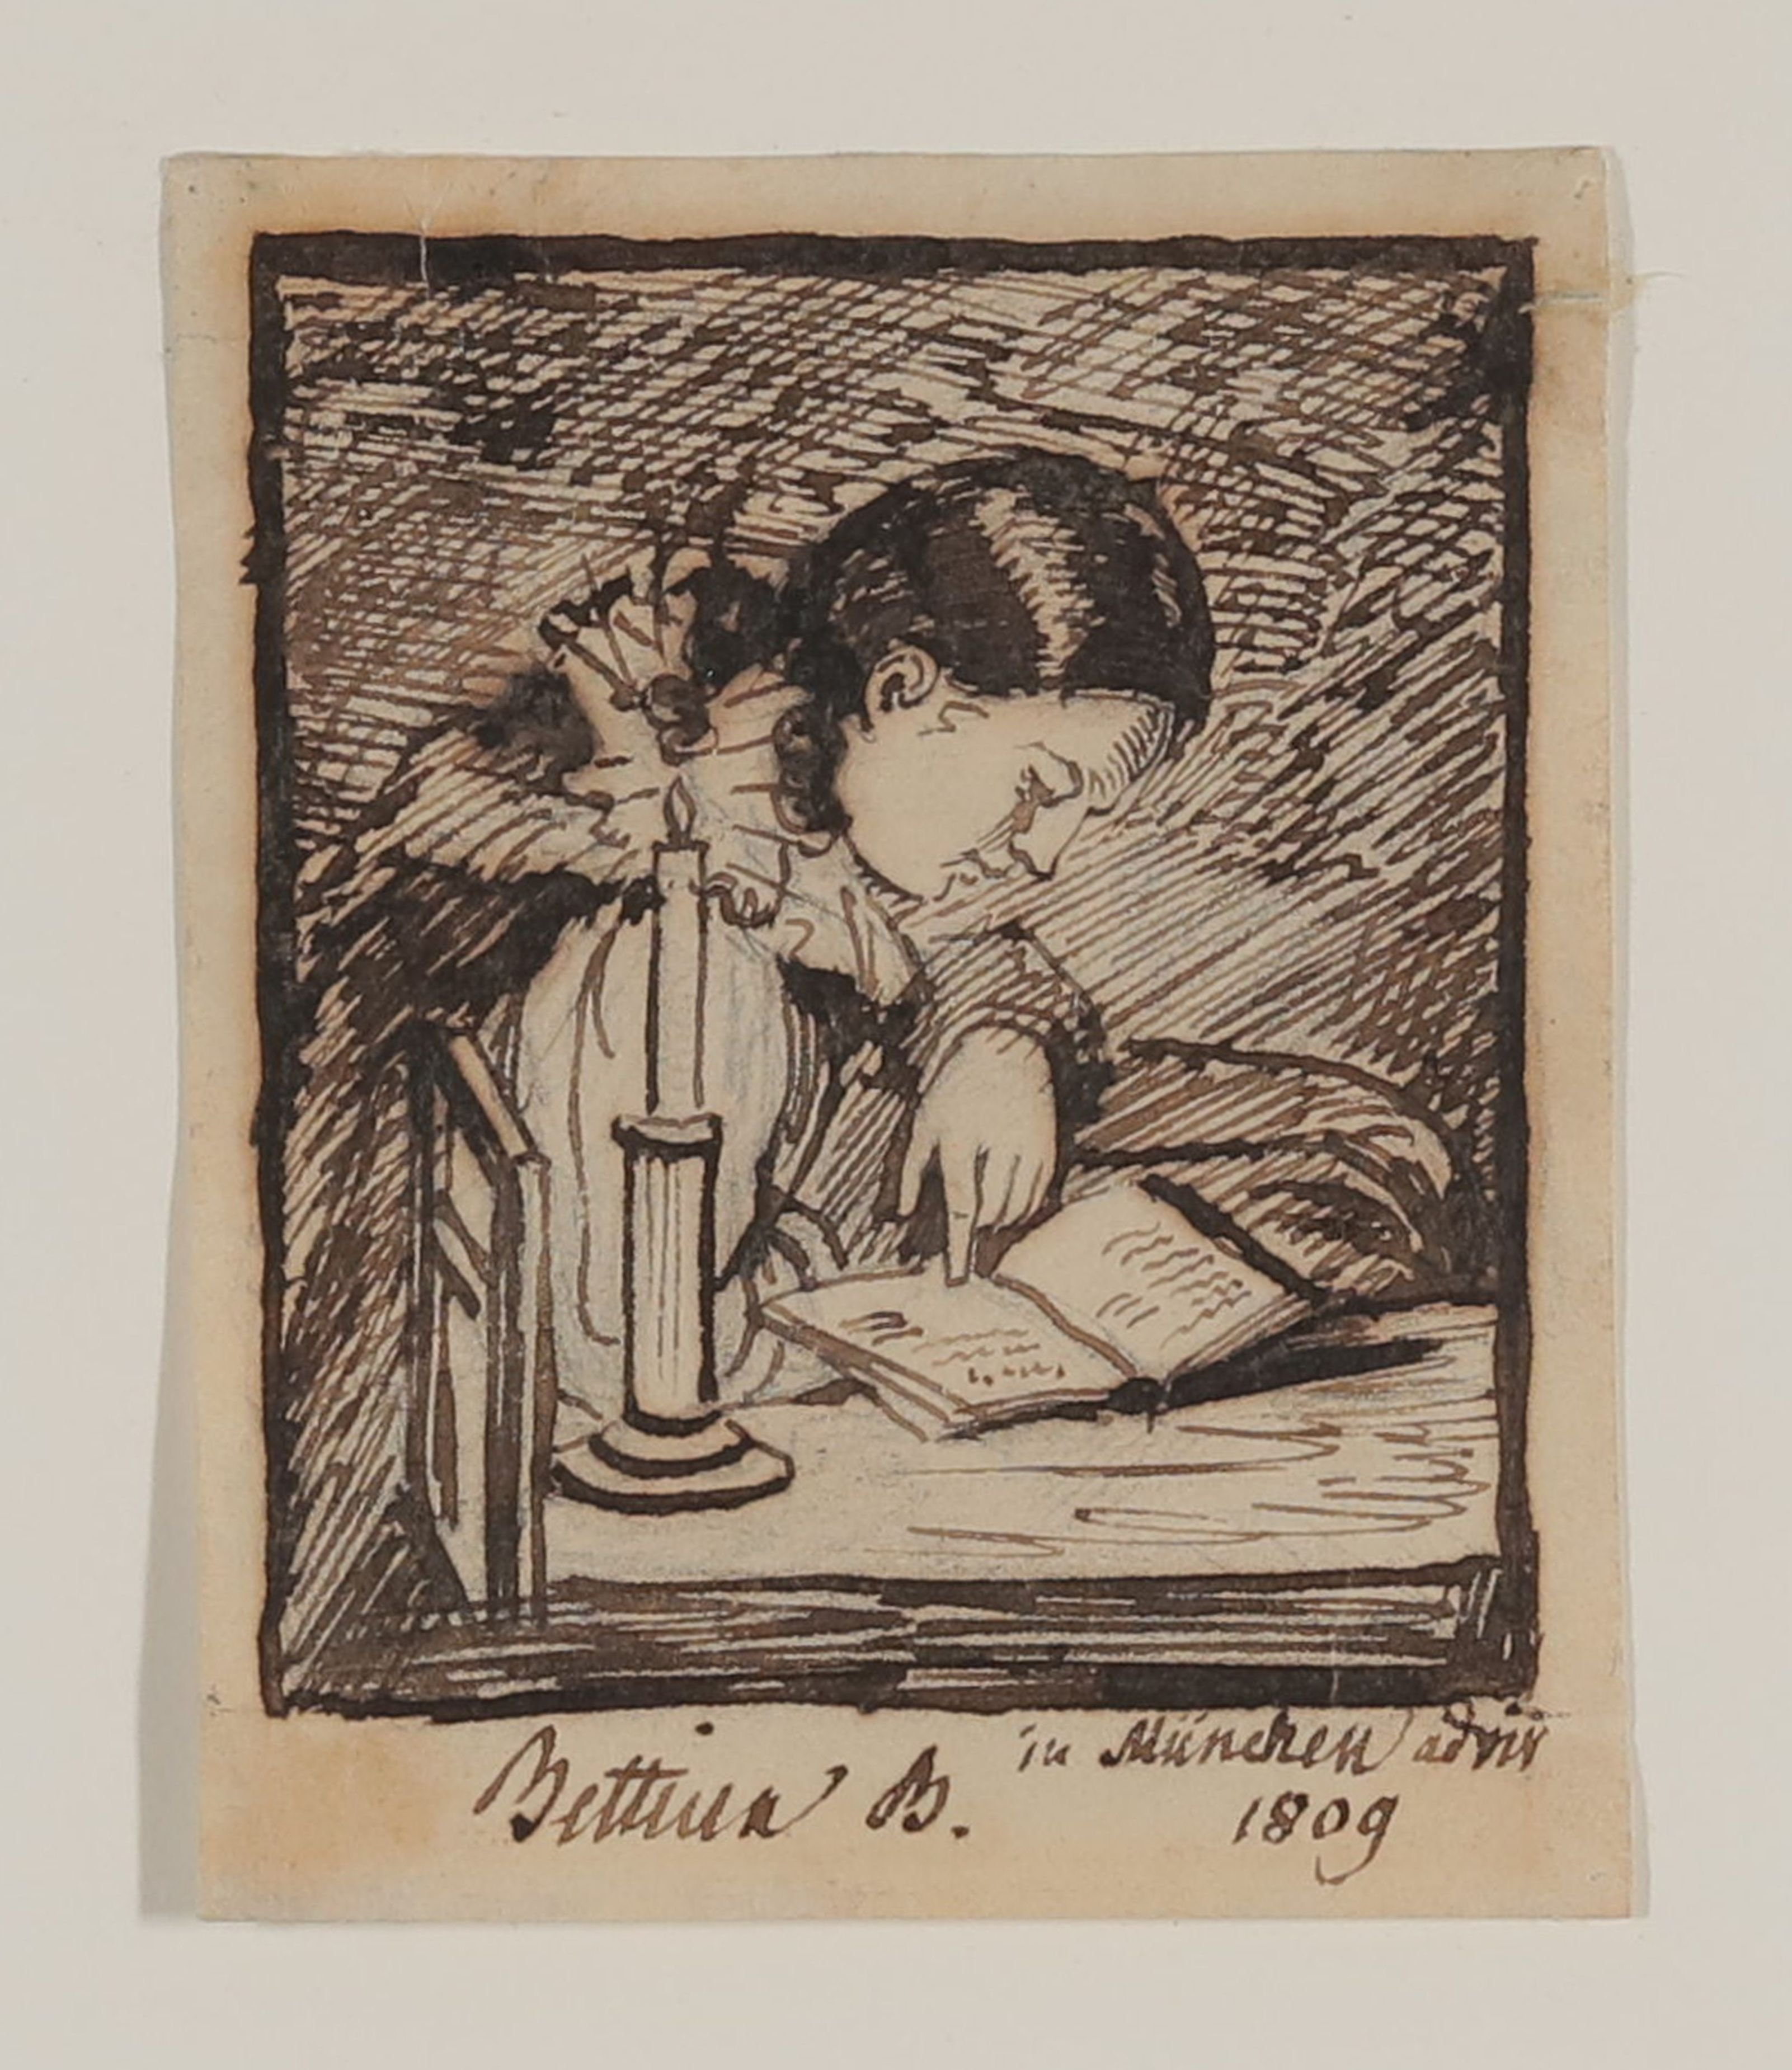 Bettine Brentano, spätere von Arnim, bei Kerzenlicht lesend (Freies Deutsches Hochstift Public Domain Mark)